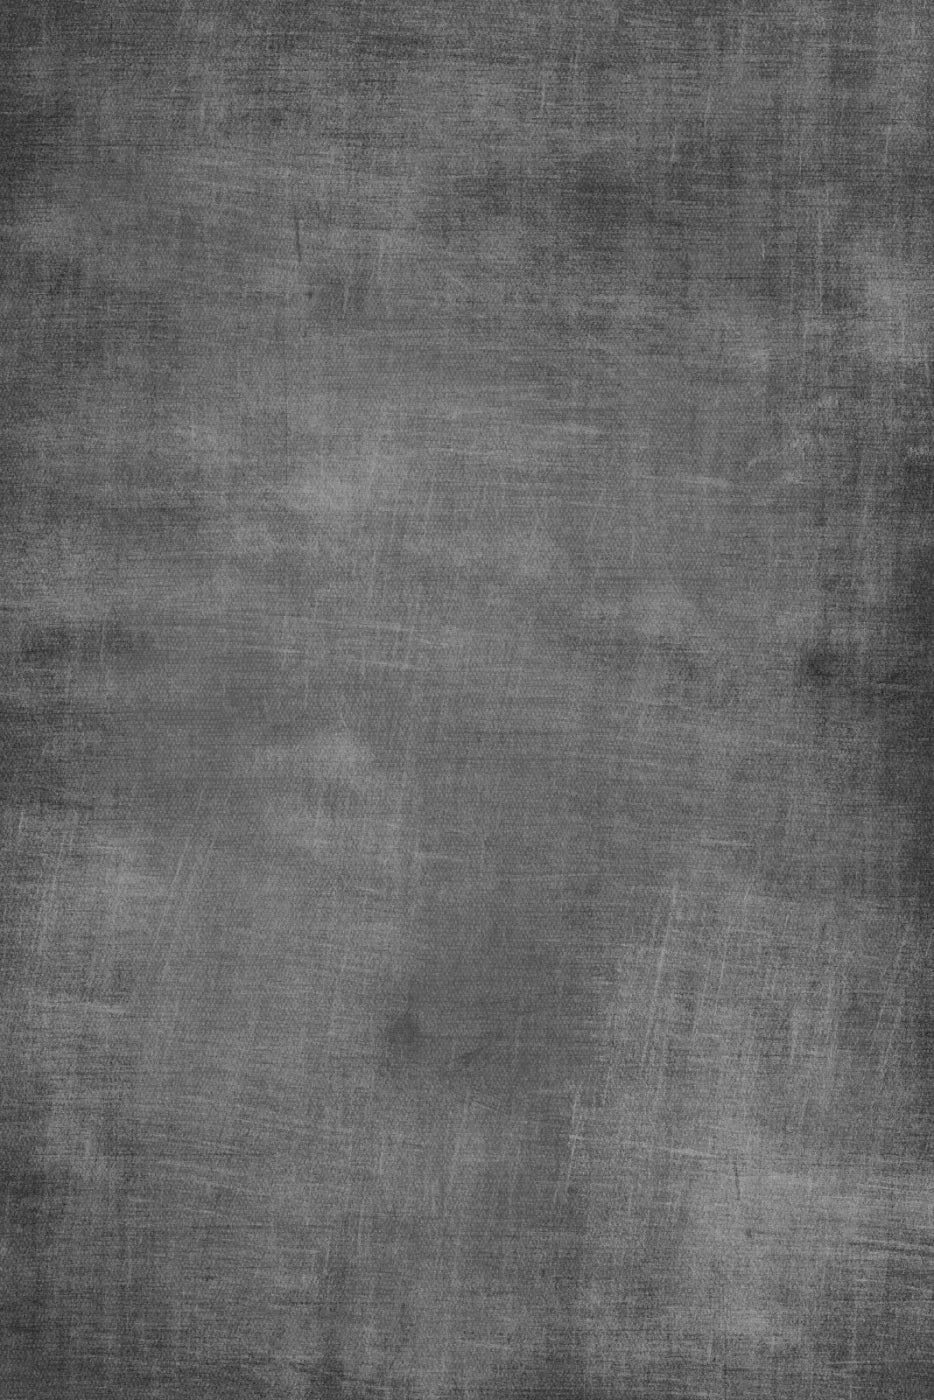 Chalkboard 4X5 Rubbermat Floor ( 48 X 60 Inch ) Backdrop